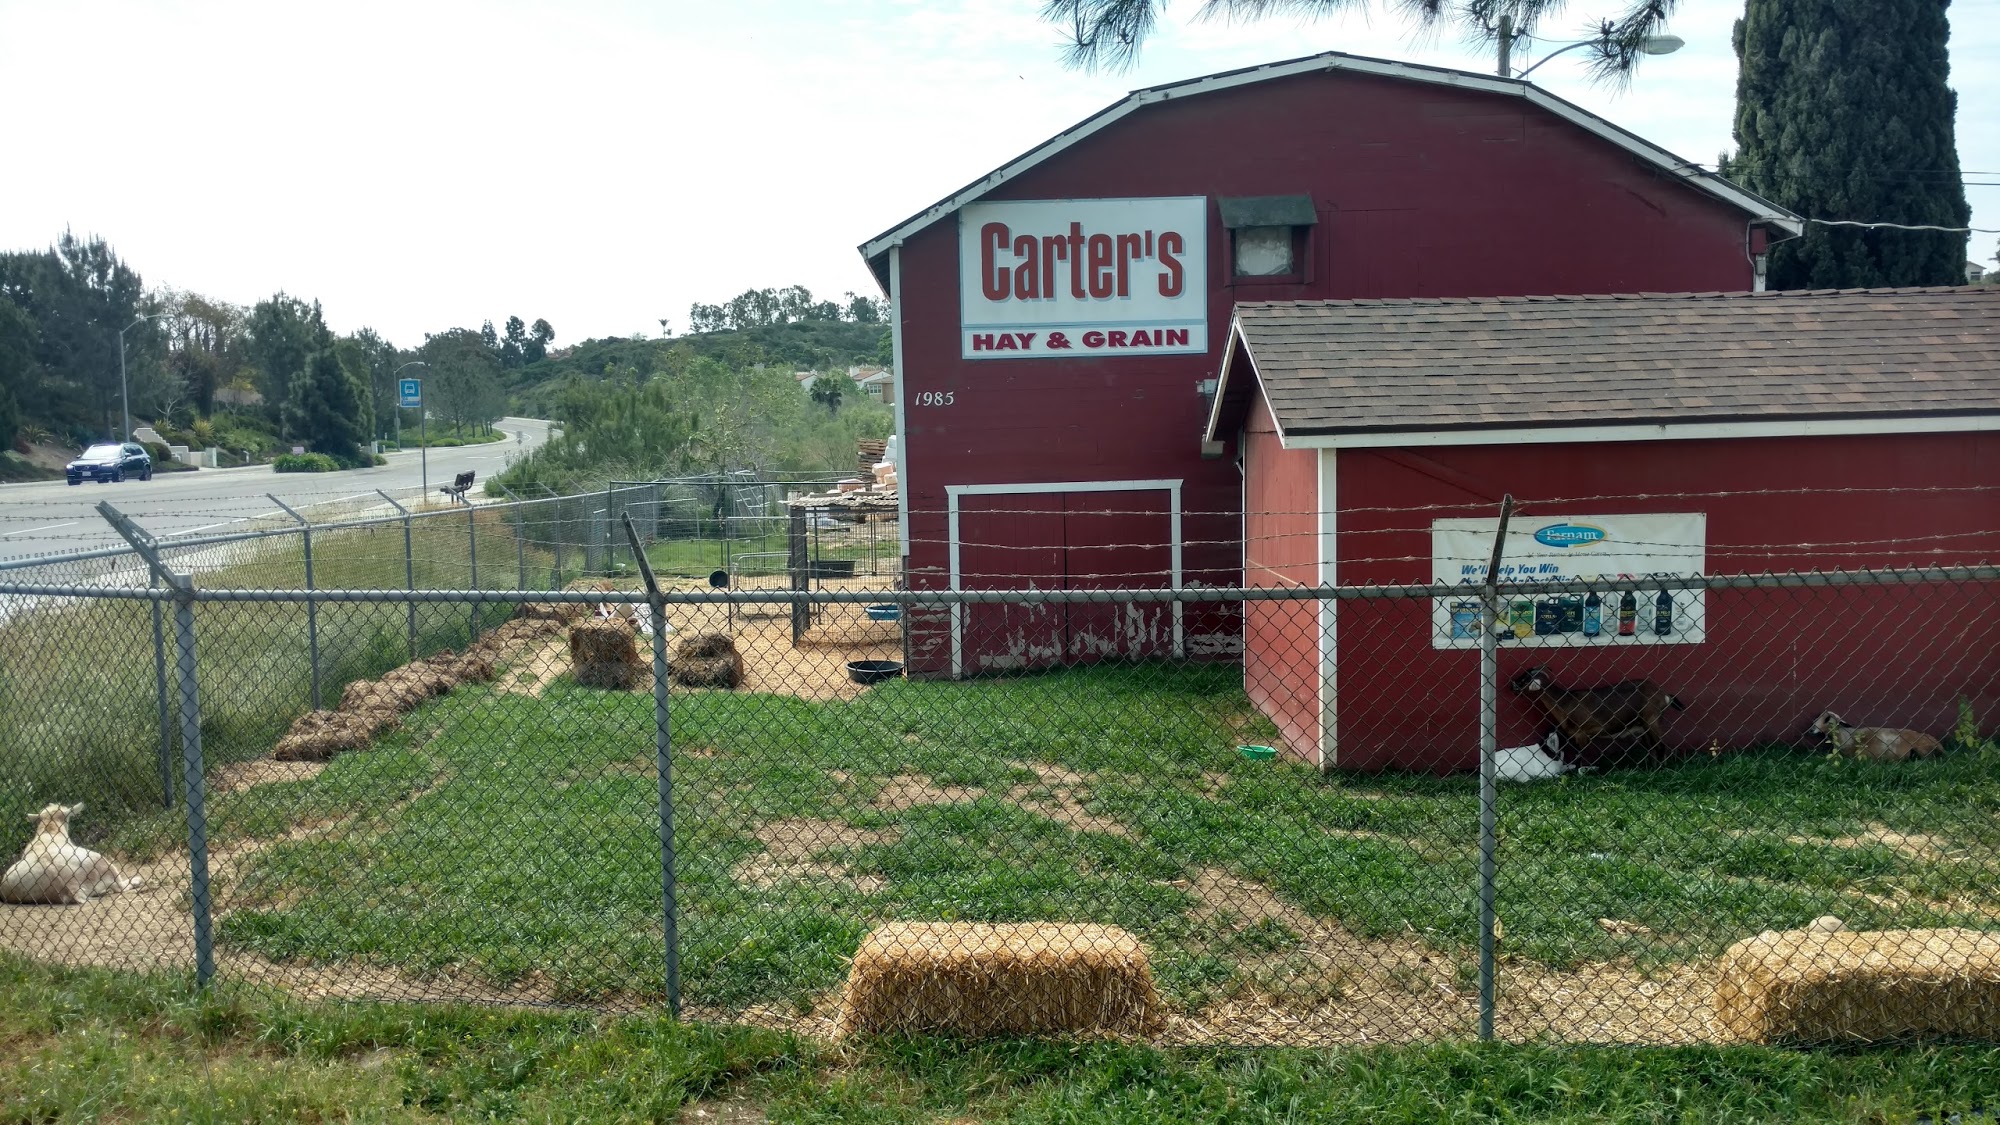 Carter's Hay & Grain